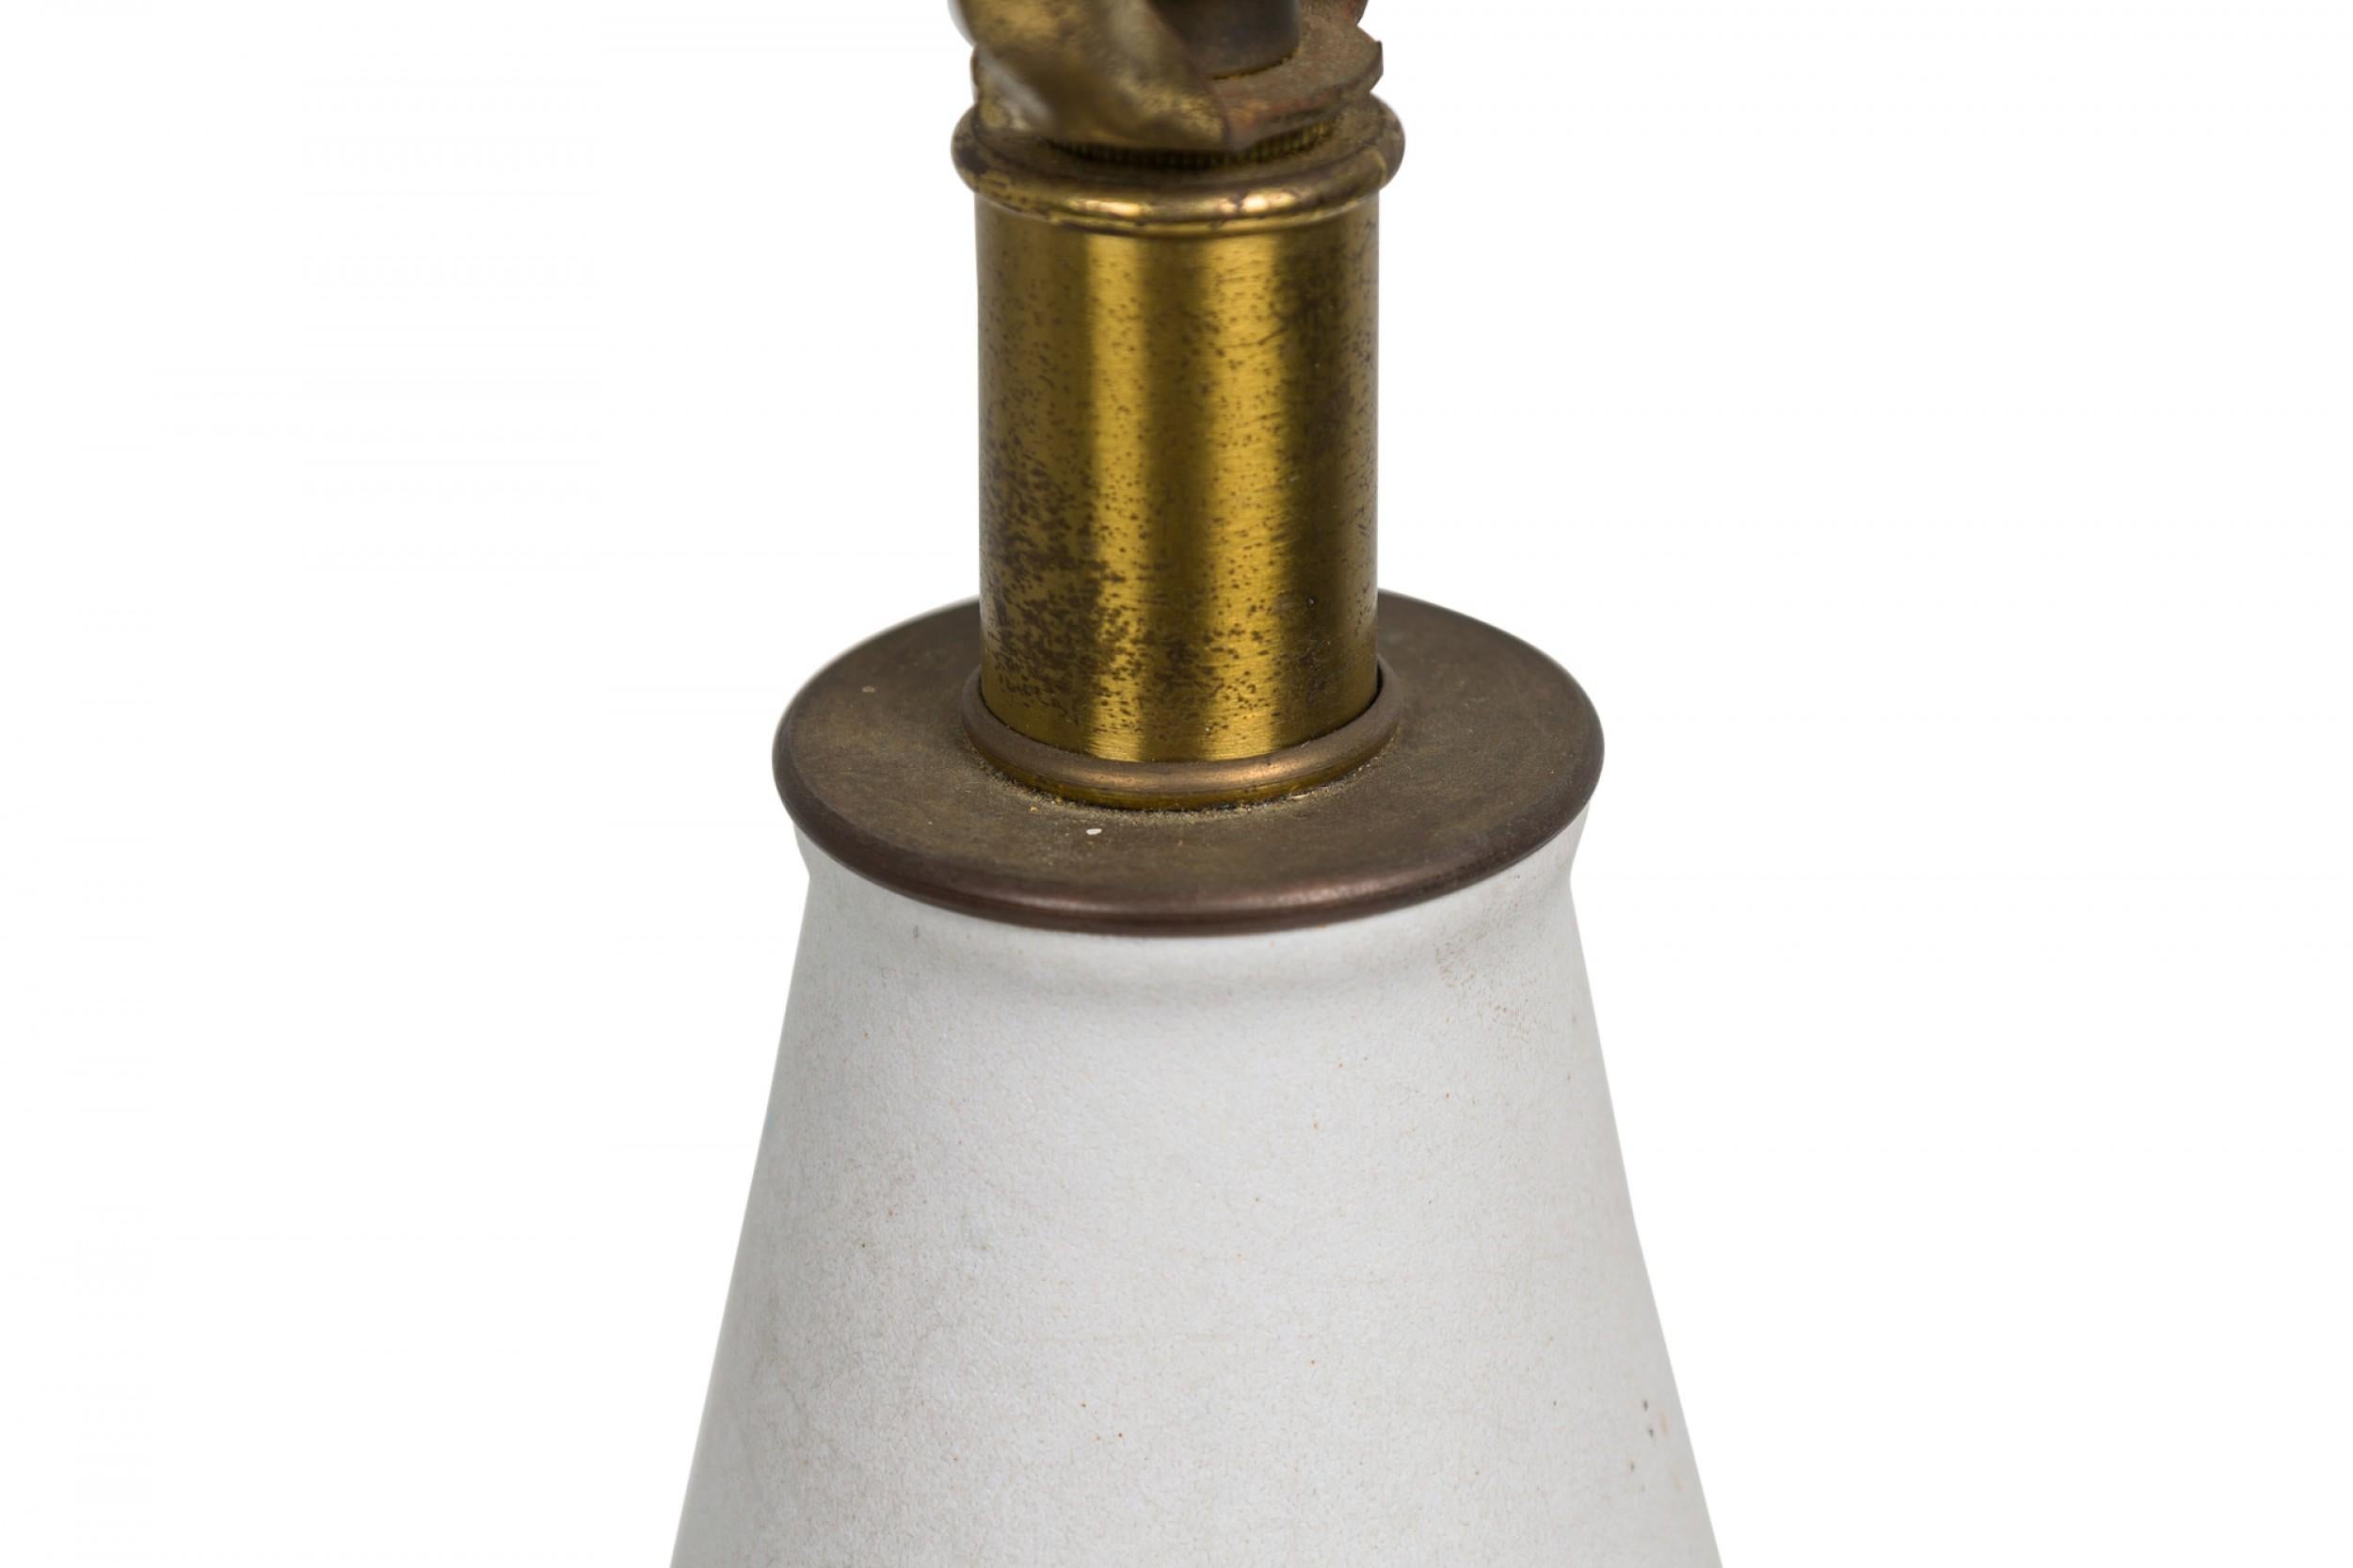 Lampe de table en céramique américaine du milieu du siècle, de forme cylindrique, se rétrécissant vers le haut avec un interrupteur fonctionnel en laiton, une section médiane à bandes en forme d'écorce fortement texturée se terminant par un pied